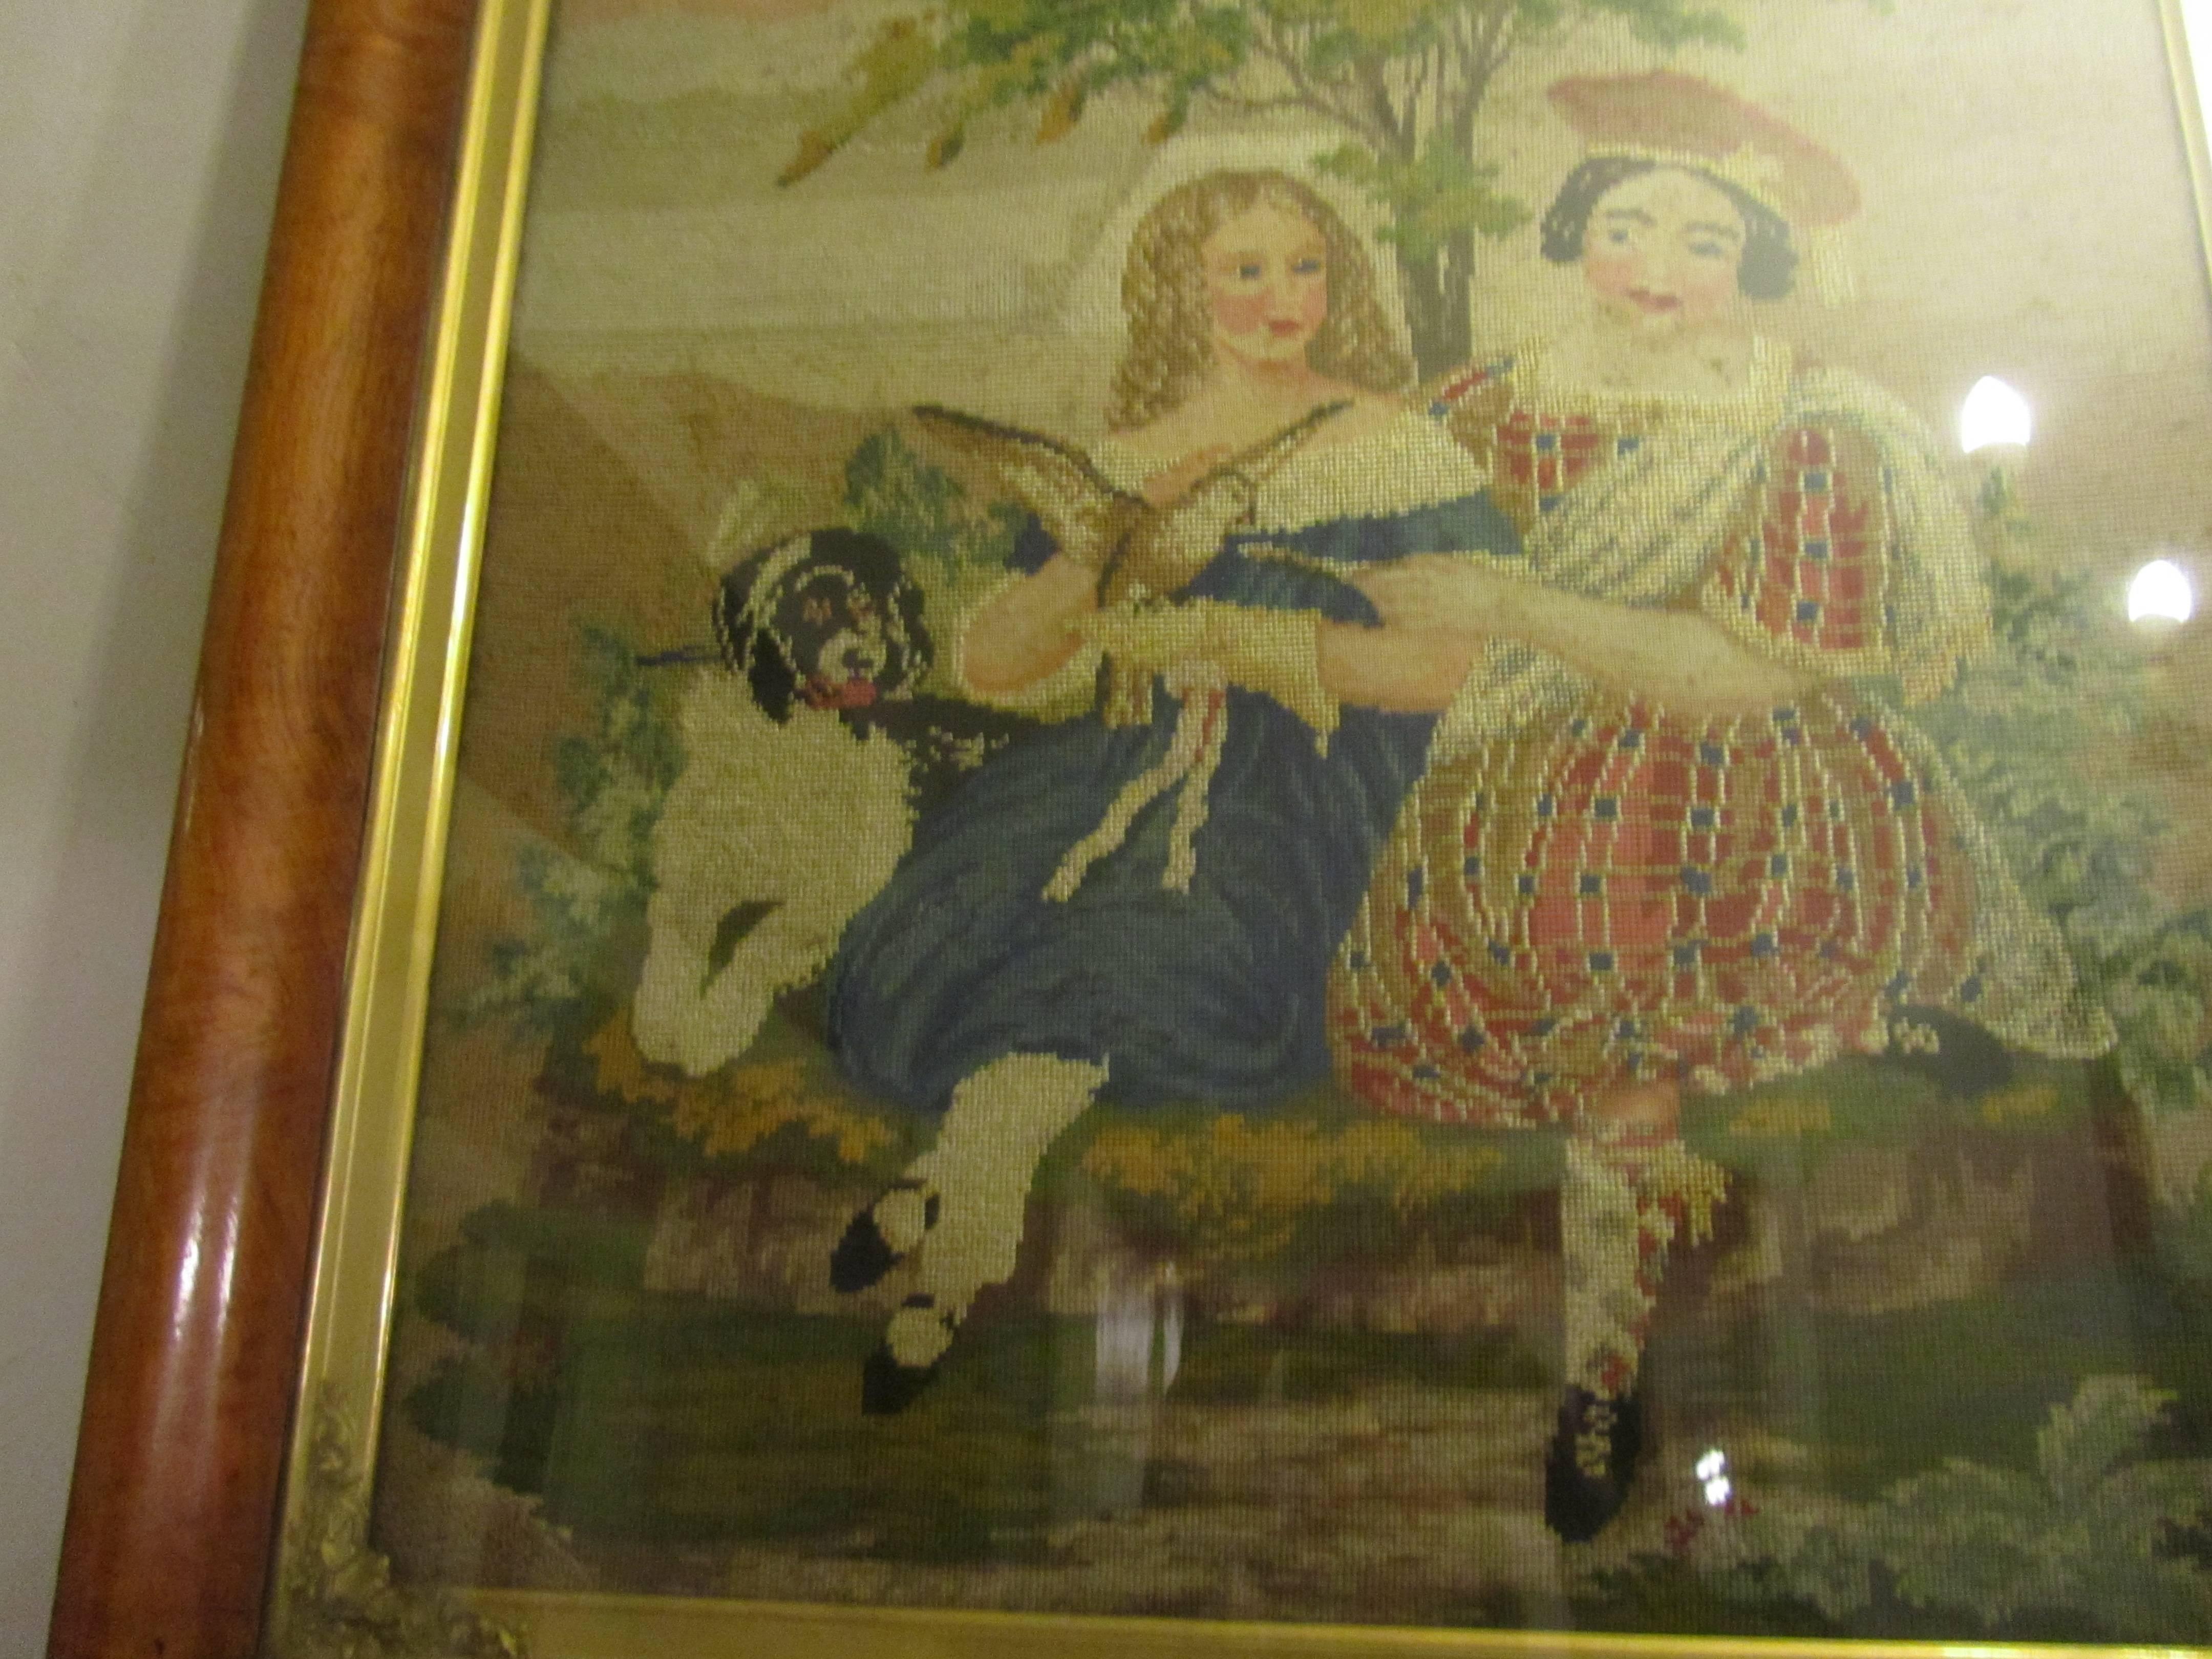 Tapisserie écossaise encadrée du 19e siècle

Il s'agit d'une charmante tapisserie écossaise encadrée du 19e siècle.
La tapisserie date d'environ 1850, elle est tissée à la main en laine et en soie, elle est dans son cadre d'origine en érable qui